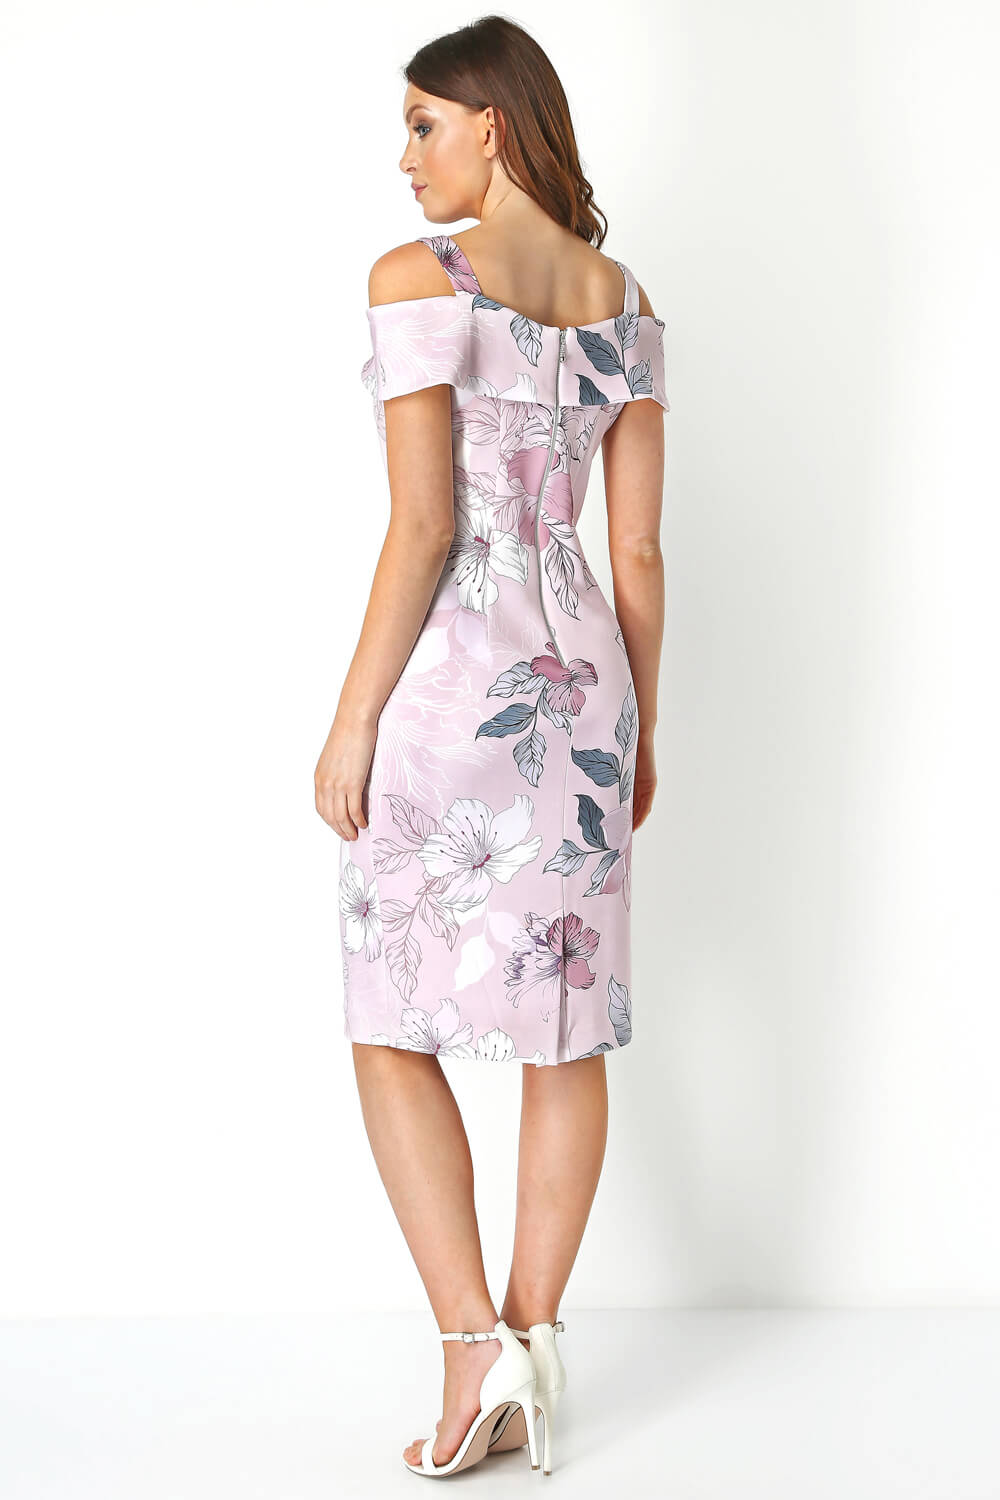 Floral Print Cold Shoulder Dress in Light Pink - Roman Originals UK